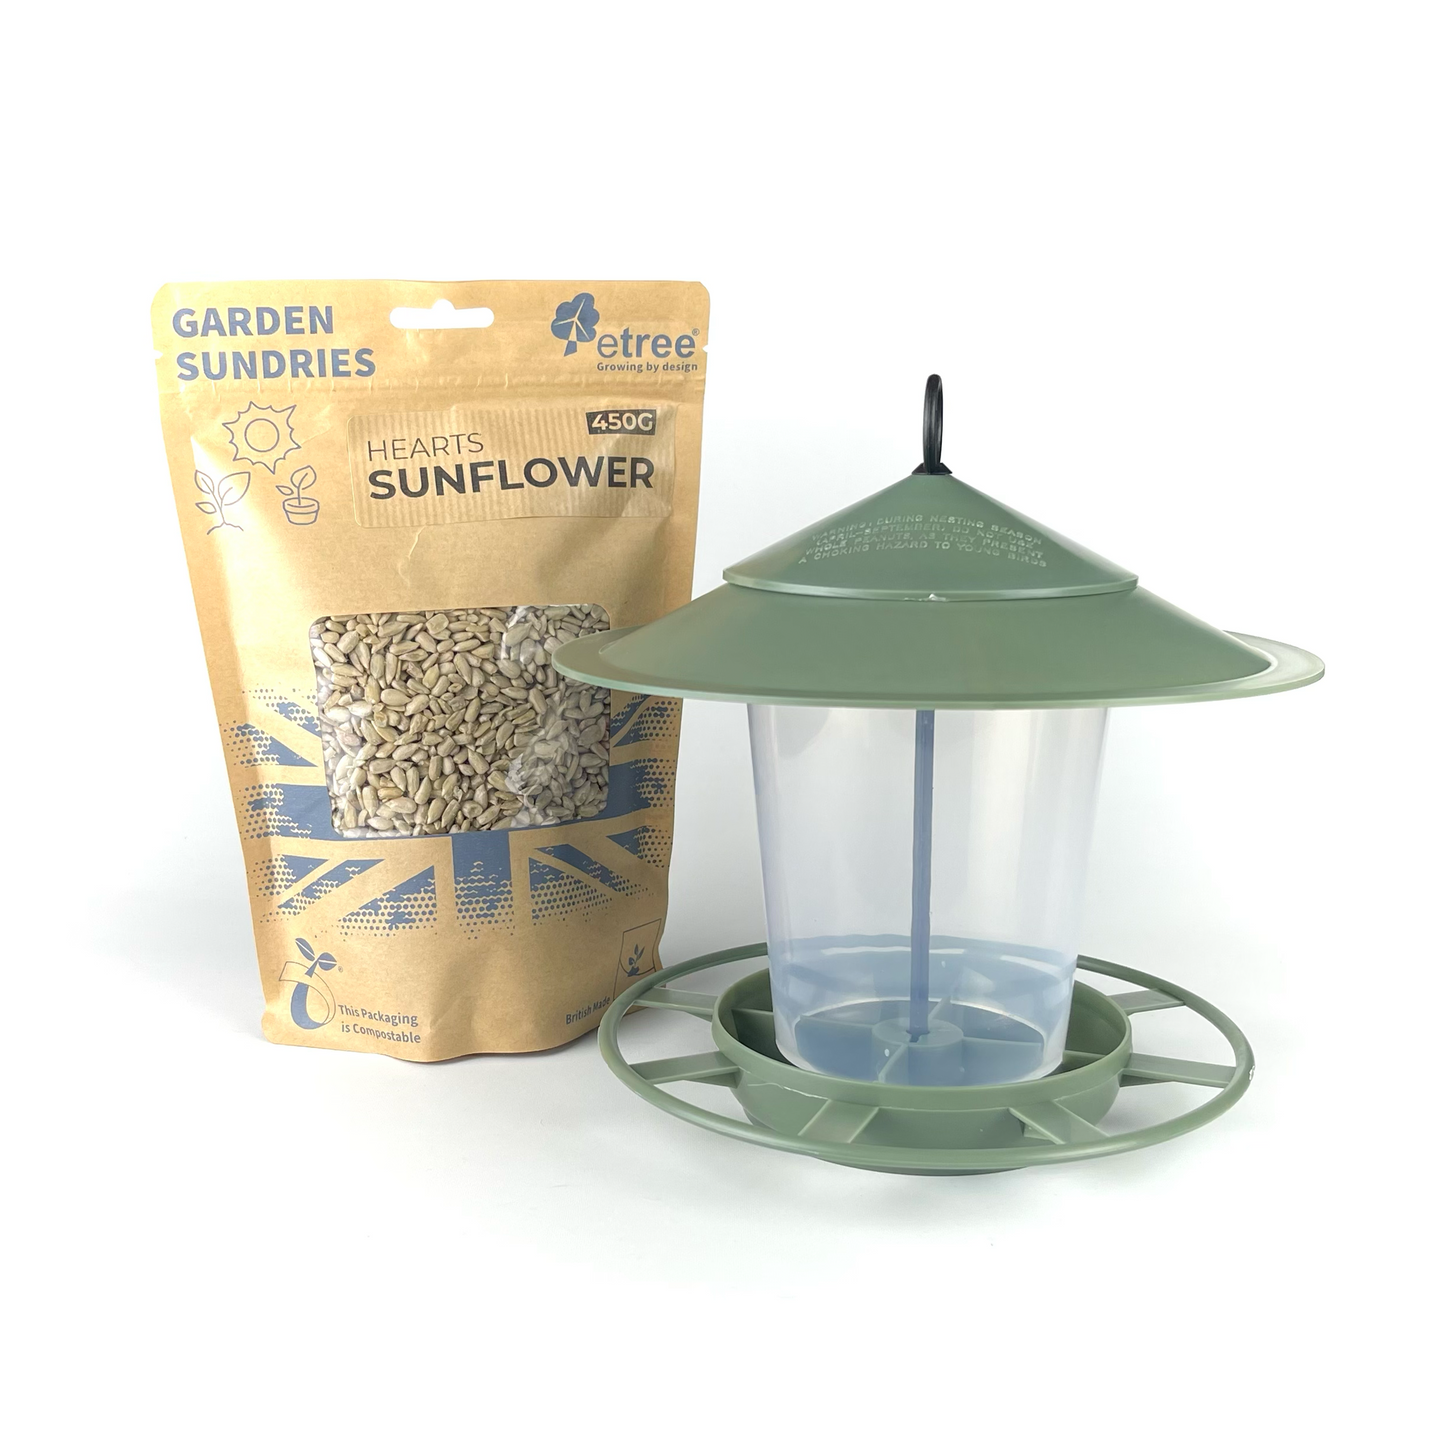 Pre Filled Hanging Lantern Bird Feeder Gift Set & Sunflower Hearts Wild Bird Seed (450g)-5